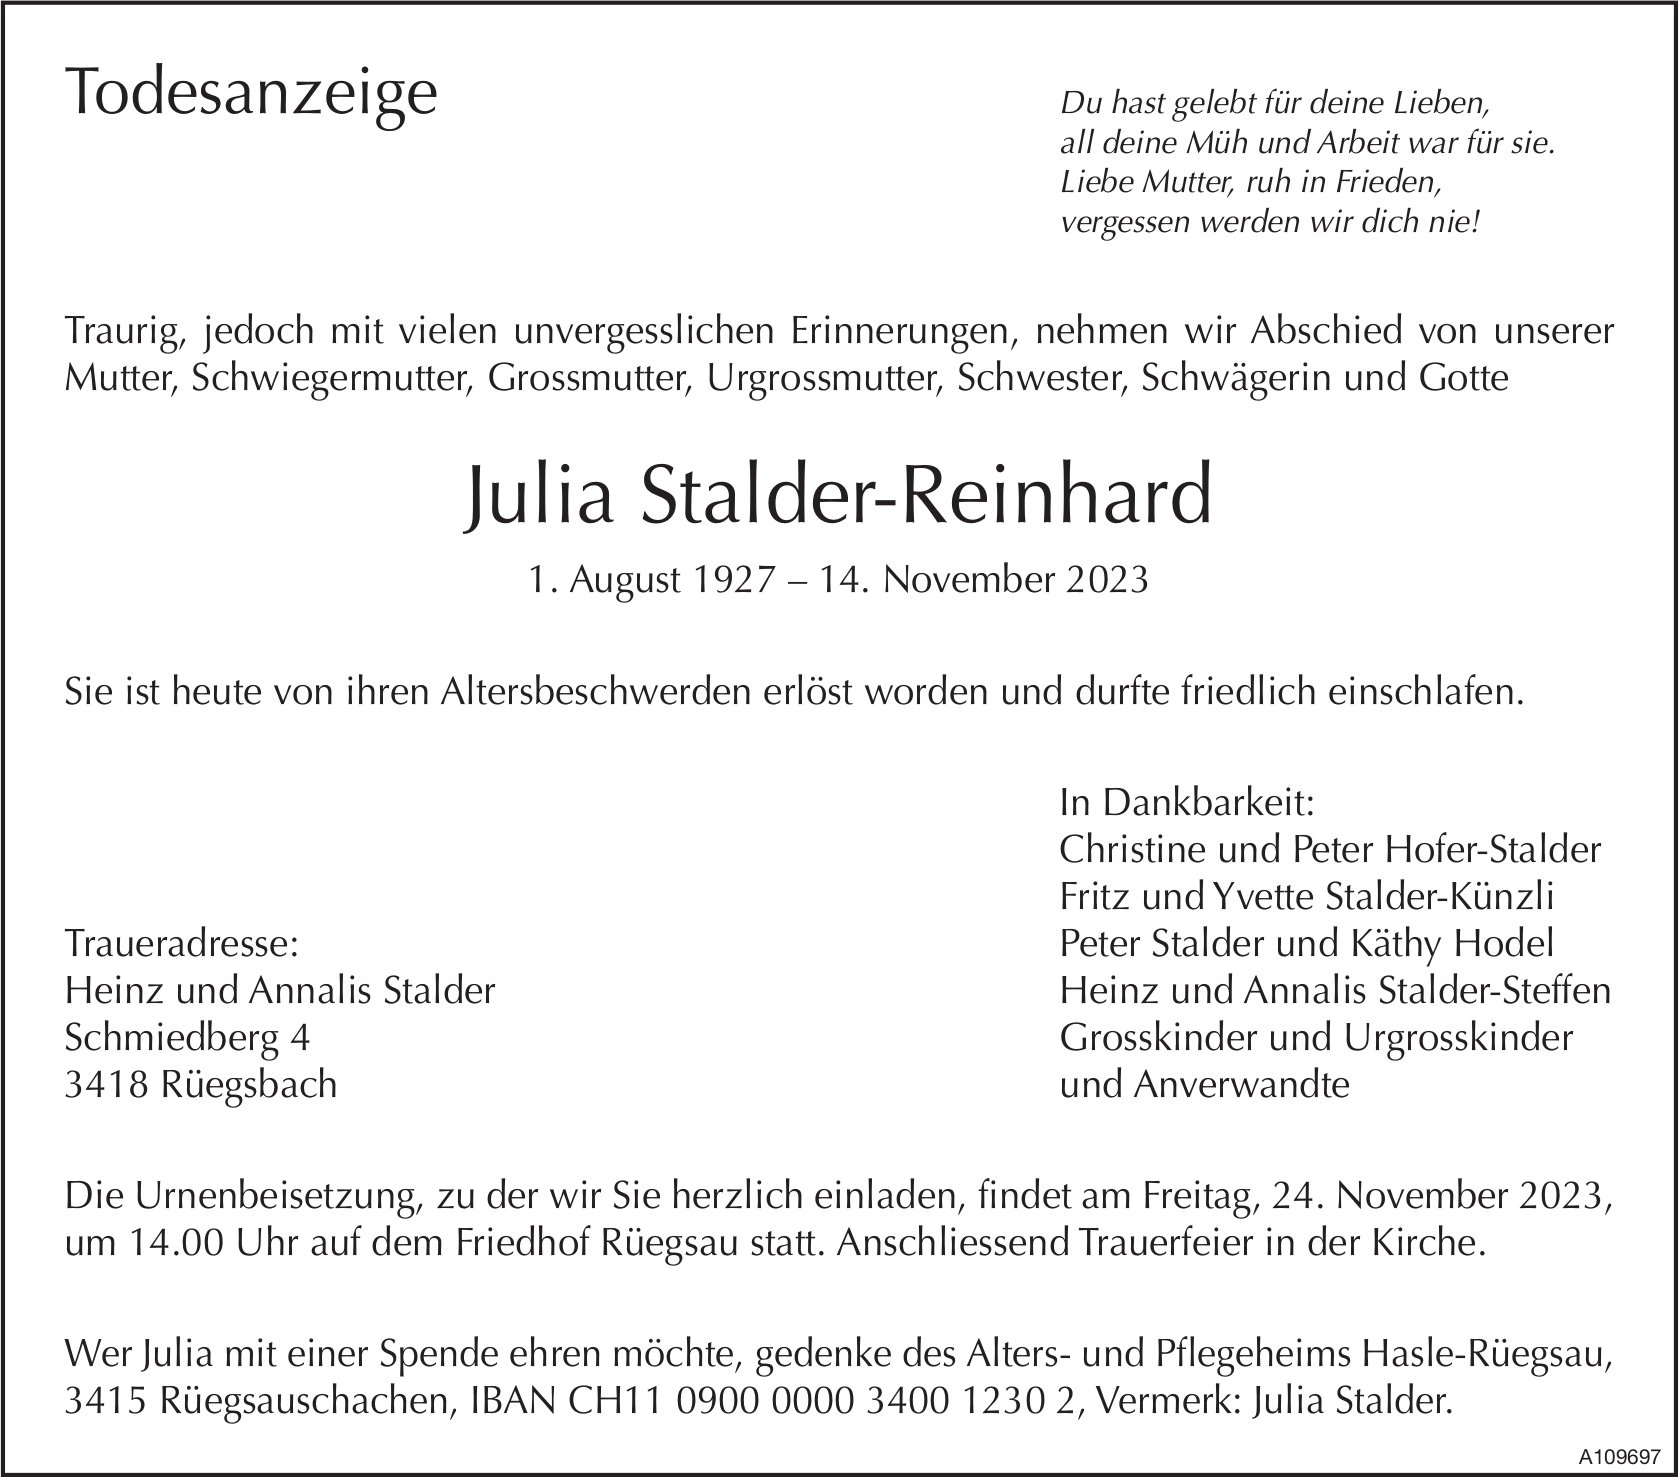 Julia Stalder-Reinhard, November 2023 / TA